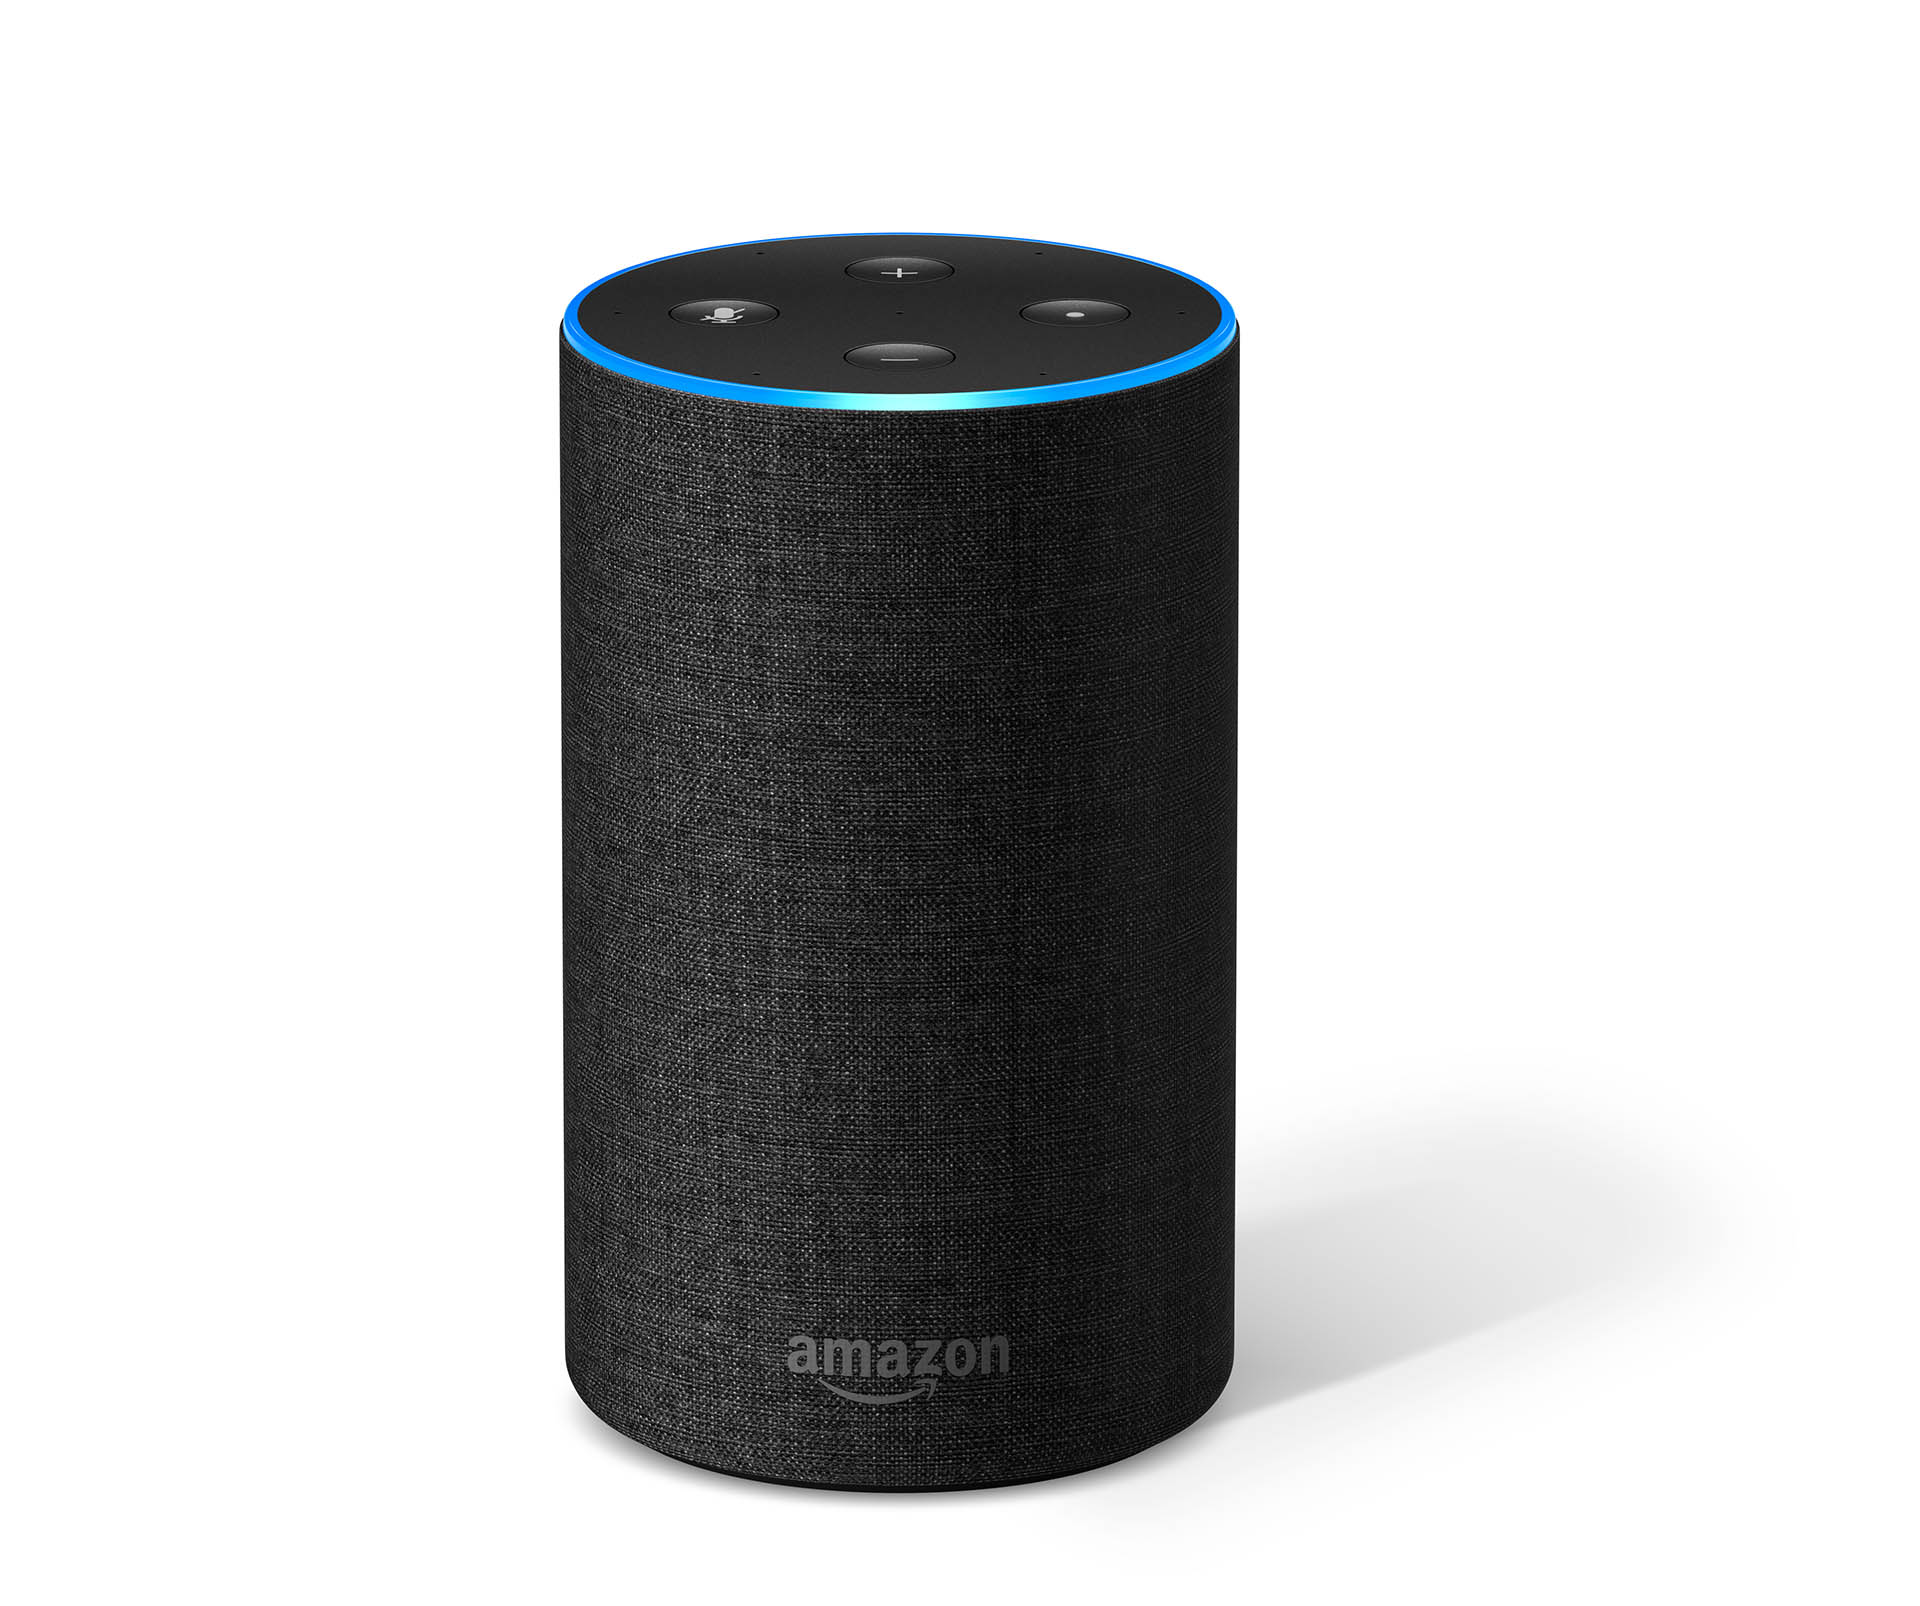 Amazon Echo product image